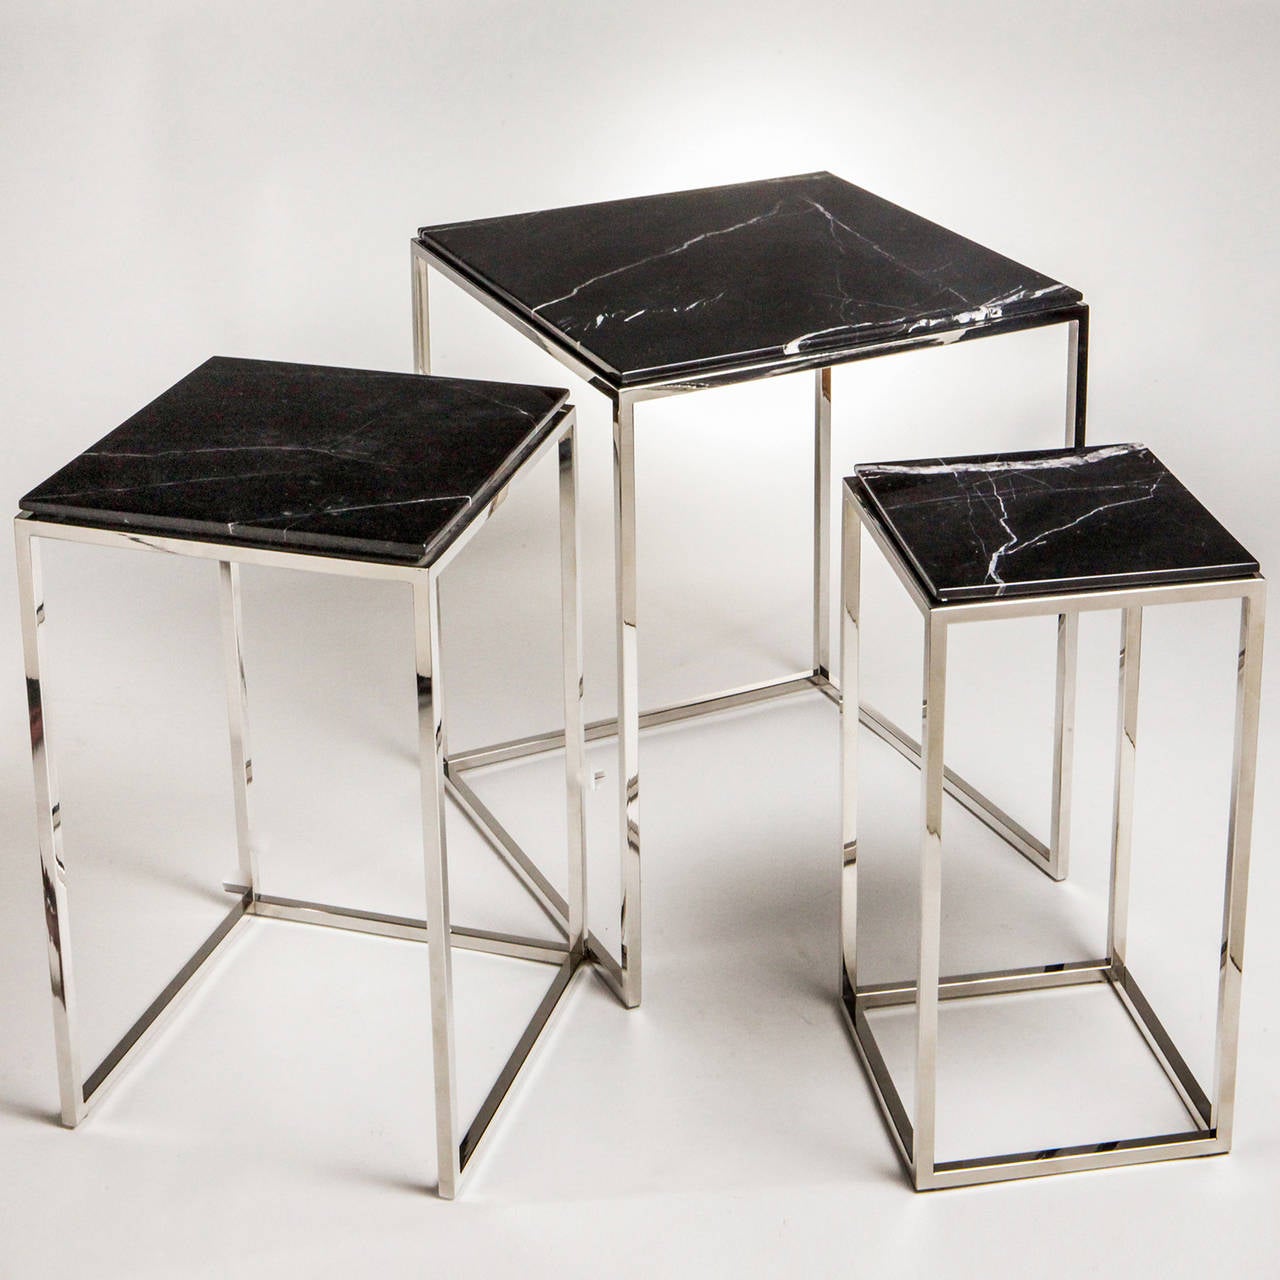 Set aus drei stapelbaren Tischen mit Gestellen aus poliertem Nickel und Platten aus schwarzem Marmor. Die Tische lassen sich vom größten (H: 25,5